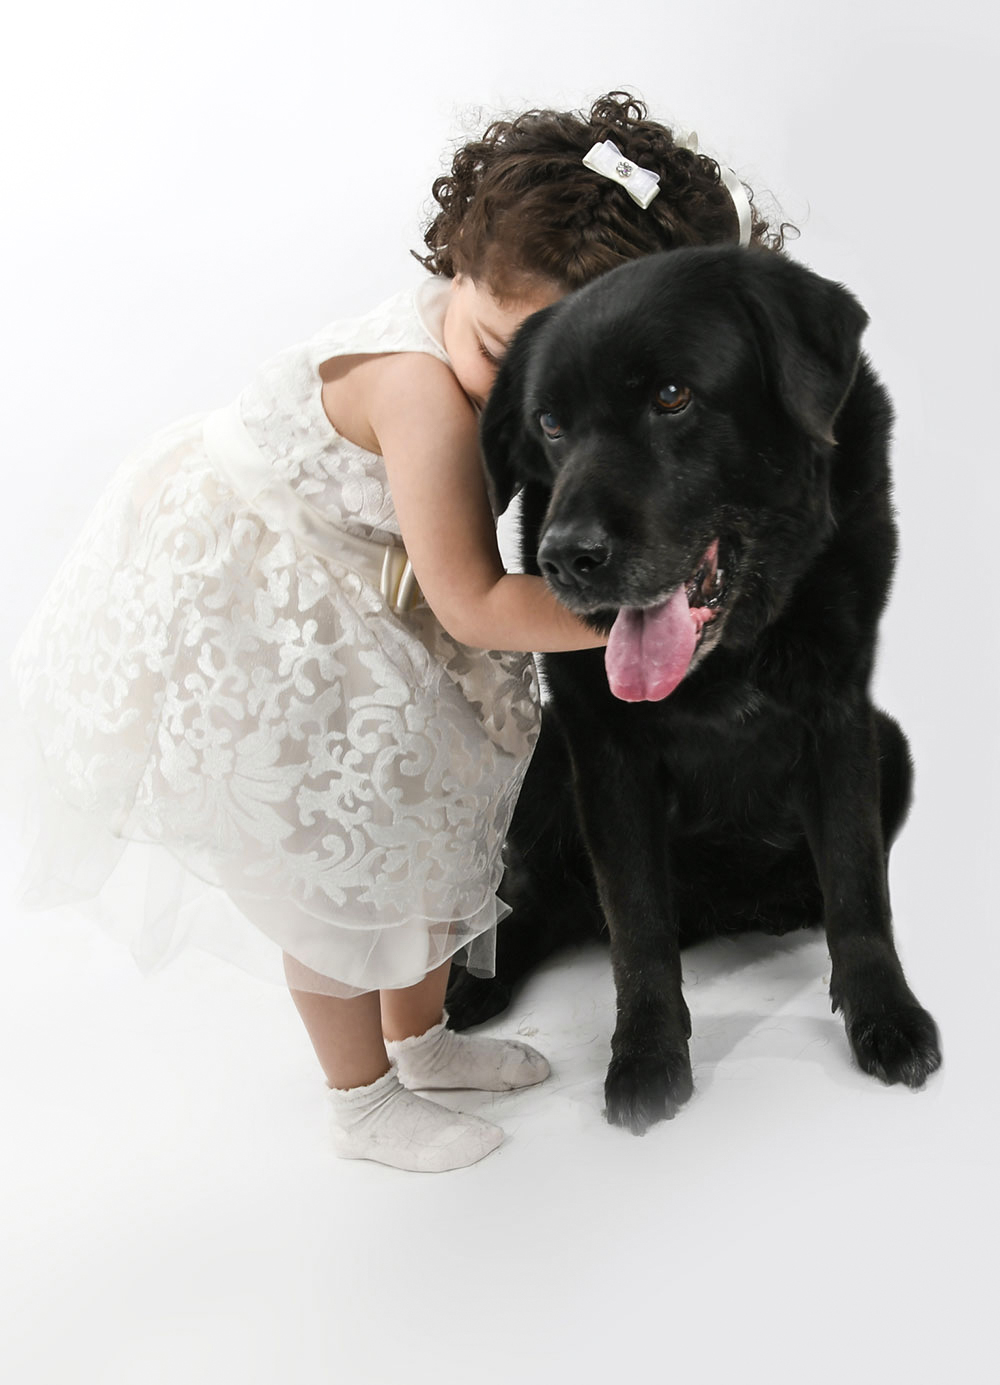 foto realizzata in studio a castelfiorentino con la bambina e il suo cane